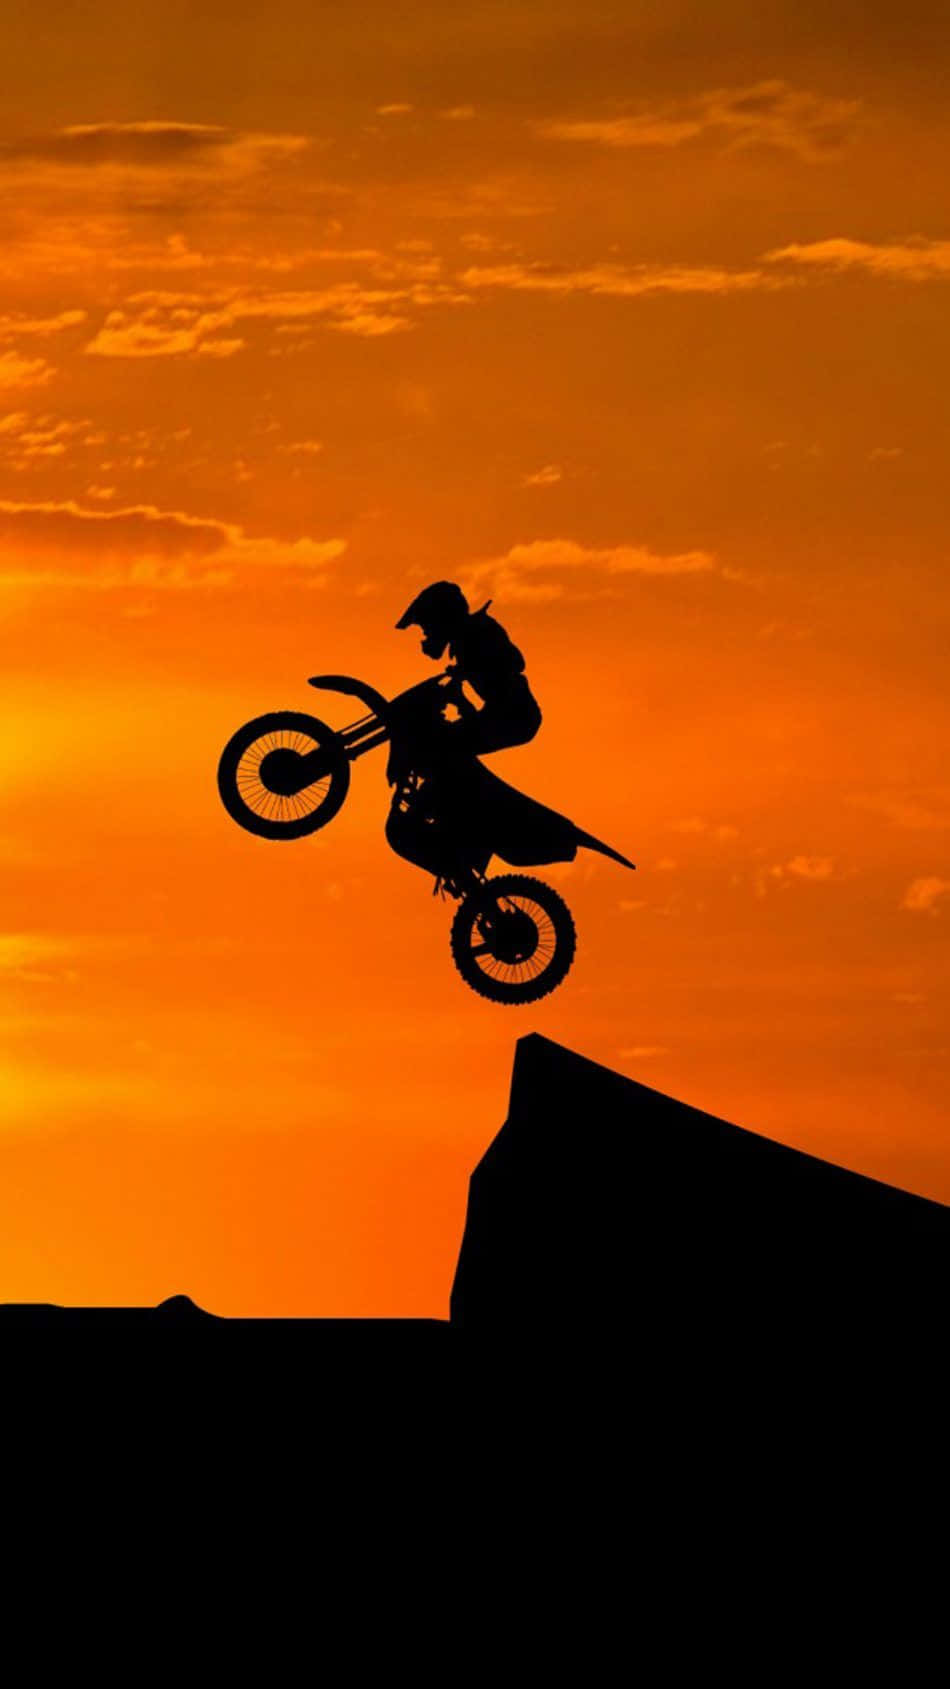 Eineperson Fährt Auf Einem Motocross-motorrad In Den Sonnenuntergang. Wallpaper